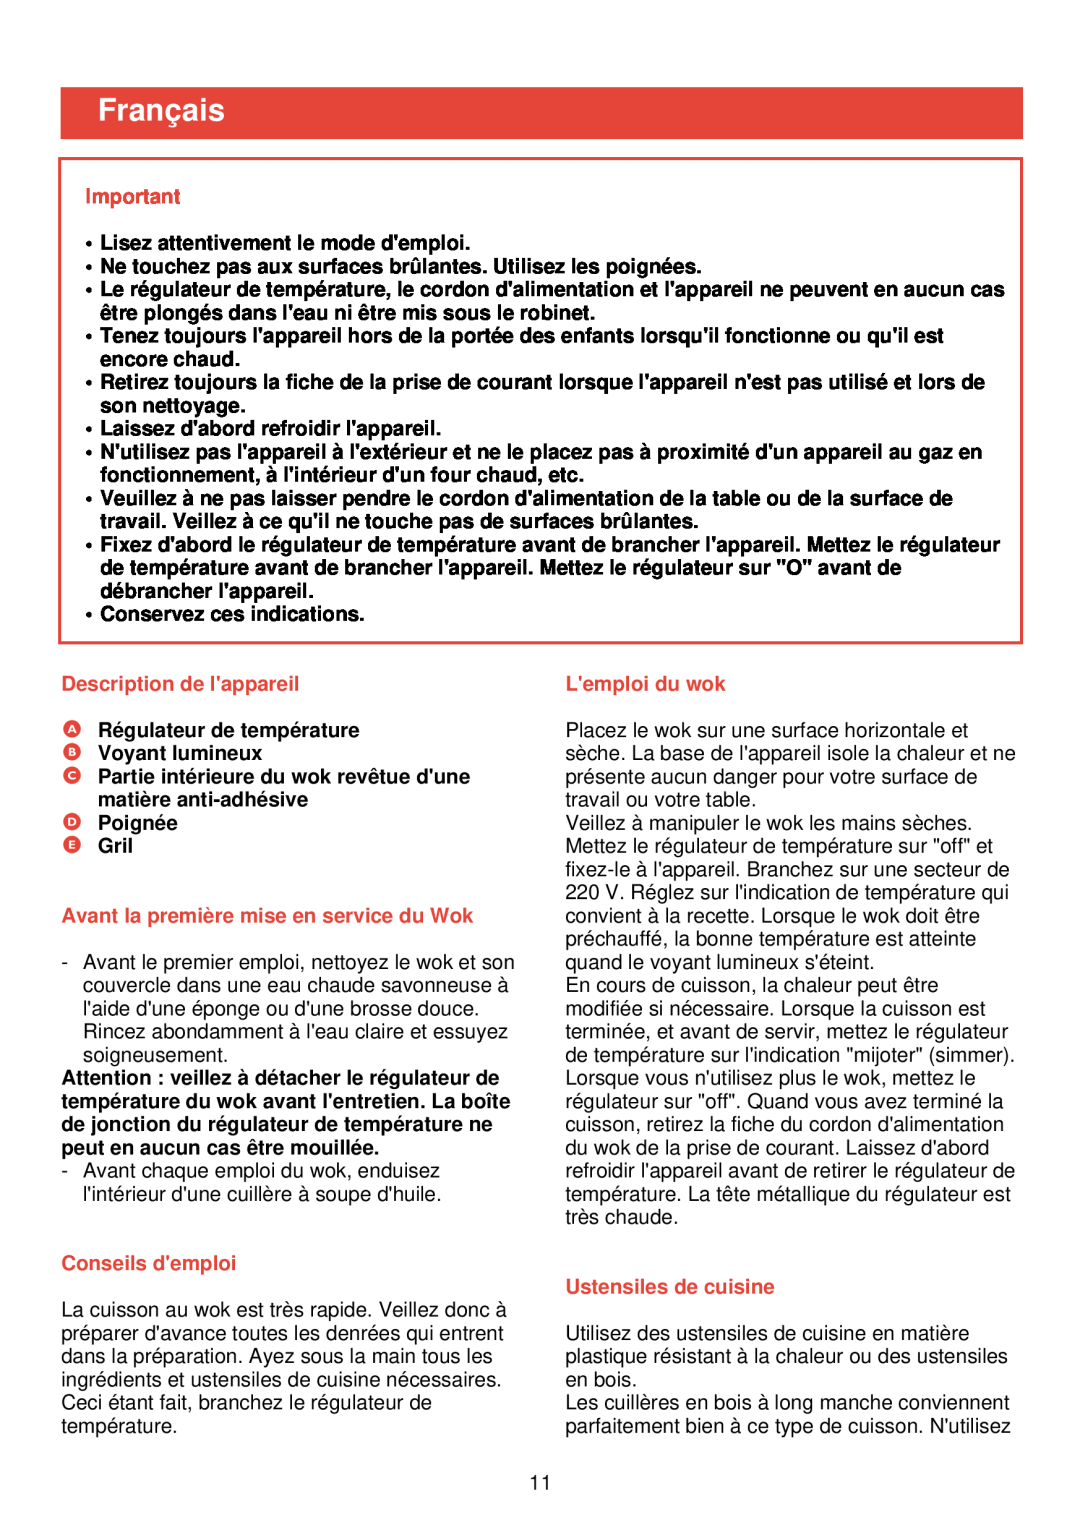 Philips HD 4335 manual Français, Description de lappareil, Avant la première mise en service du Wok, Conseils demploi 